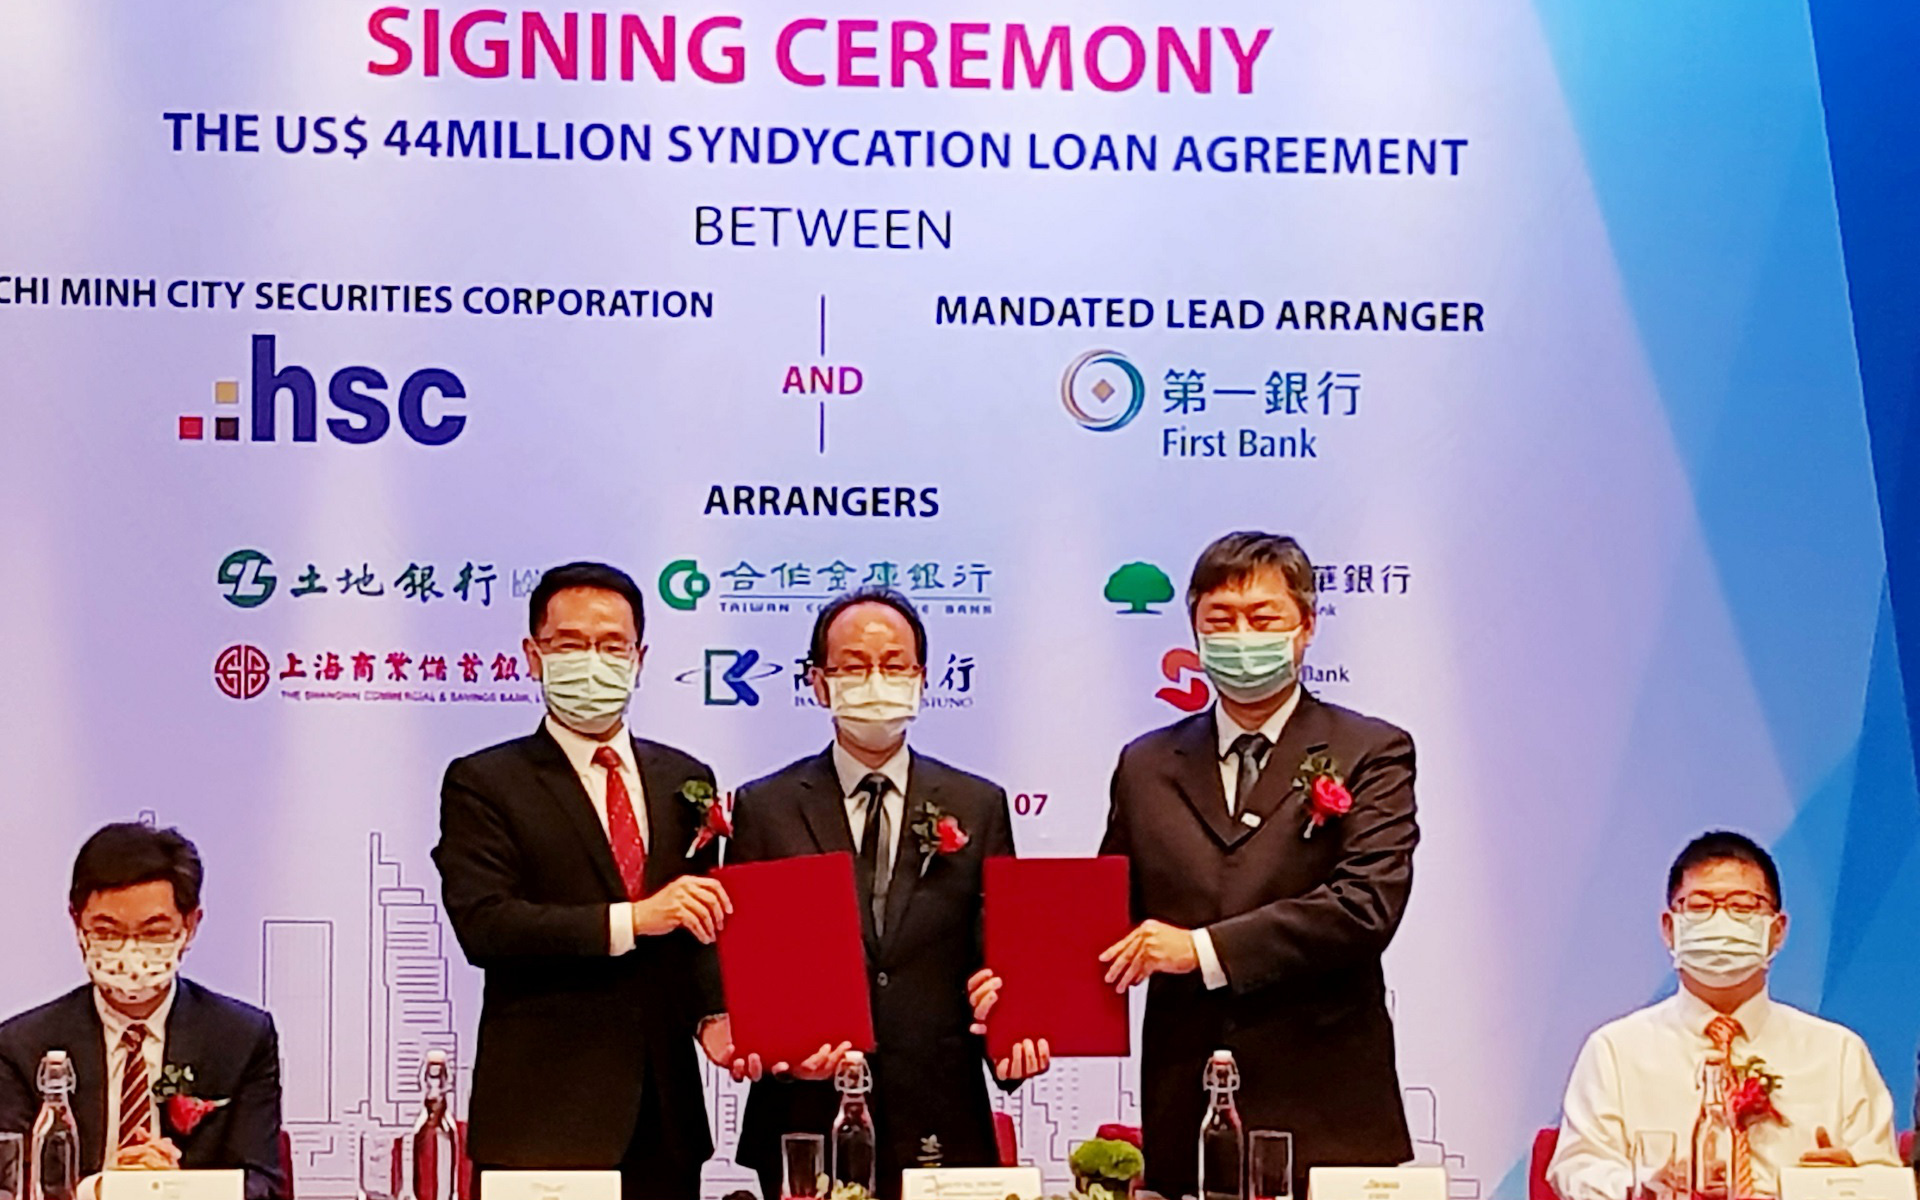 HSC nhận khoản vay hợp vốn 44 triệu USD từ các định chế tài chính Đài Loan